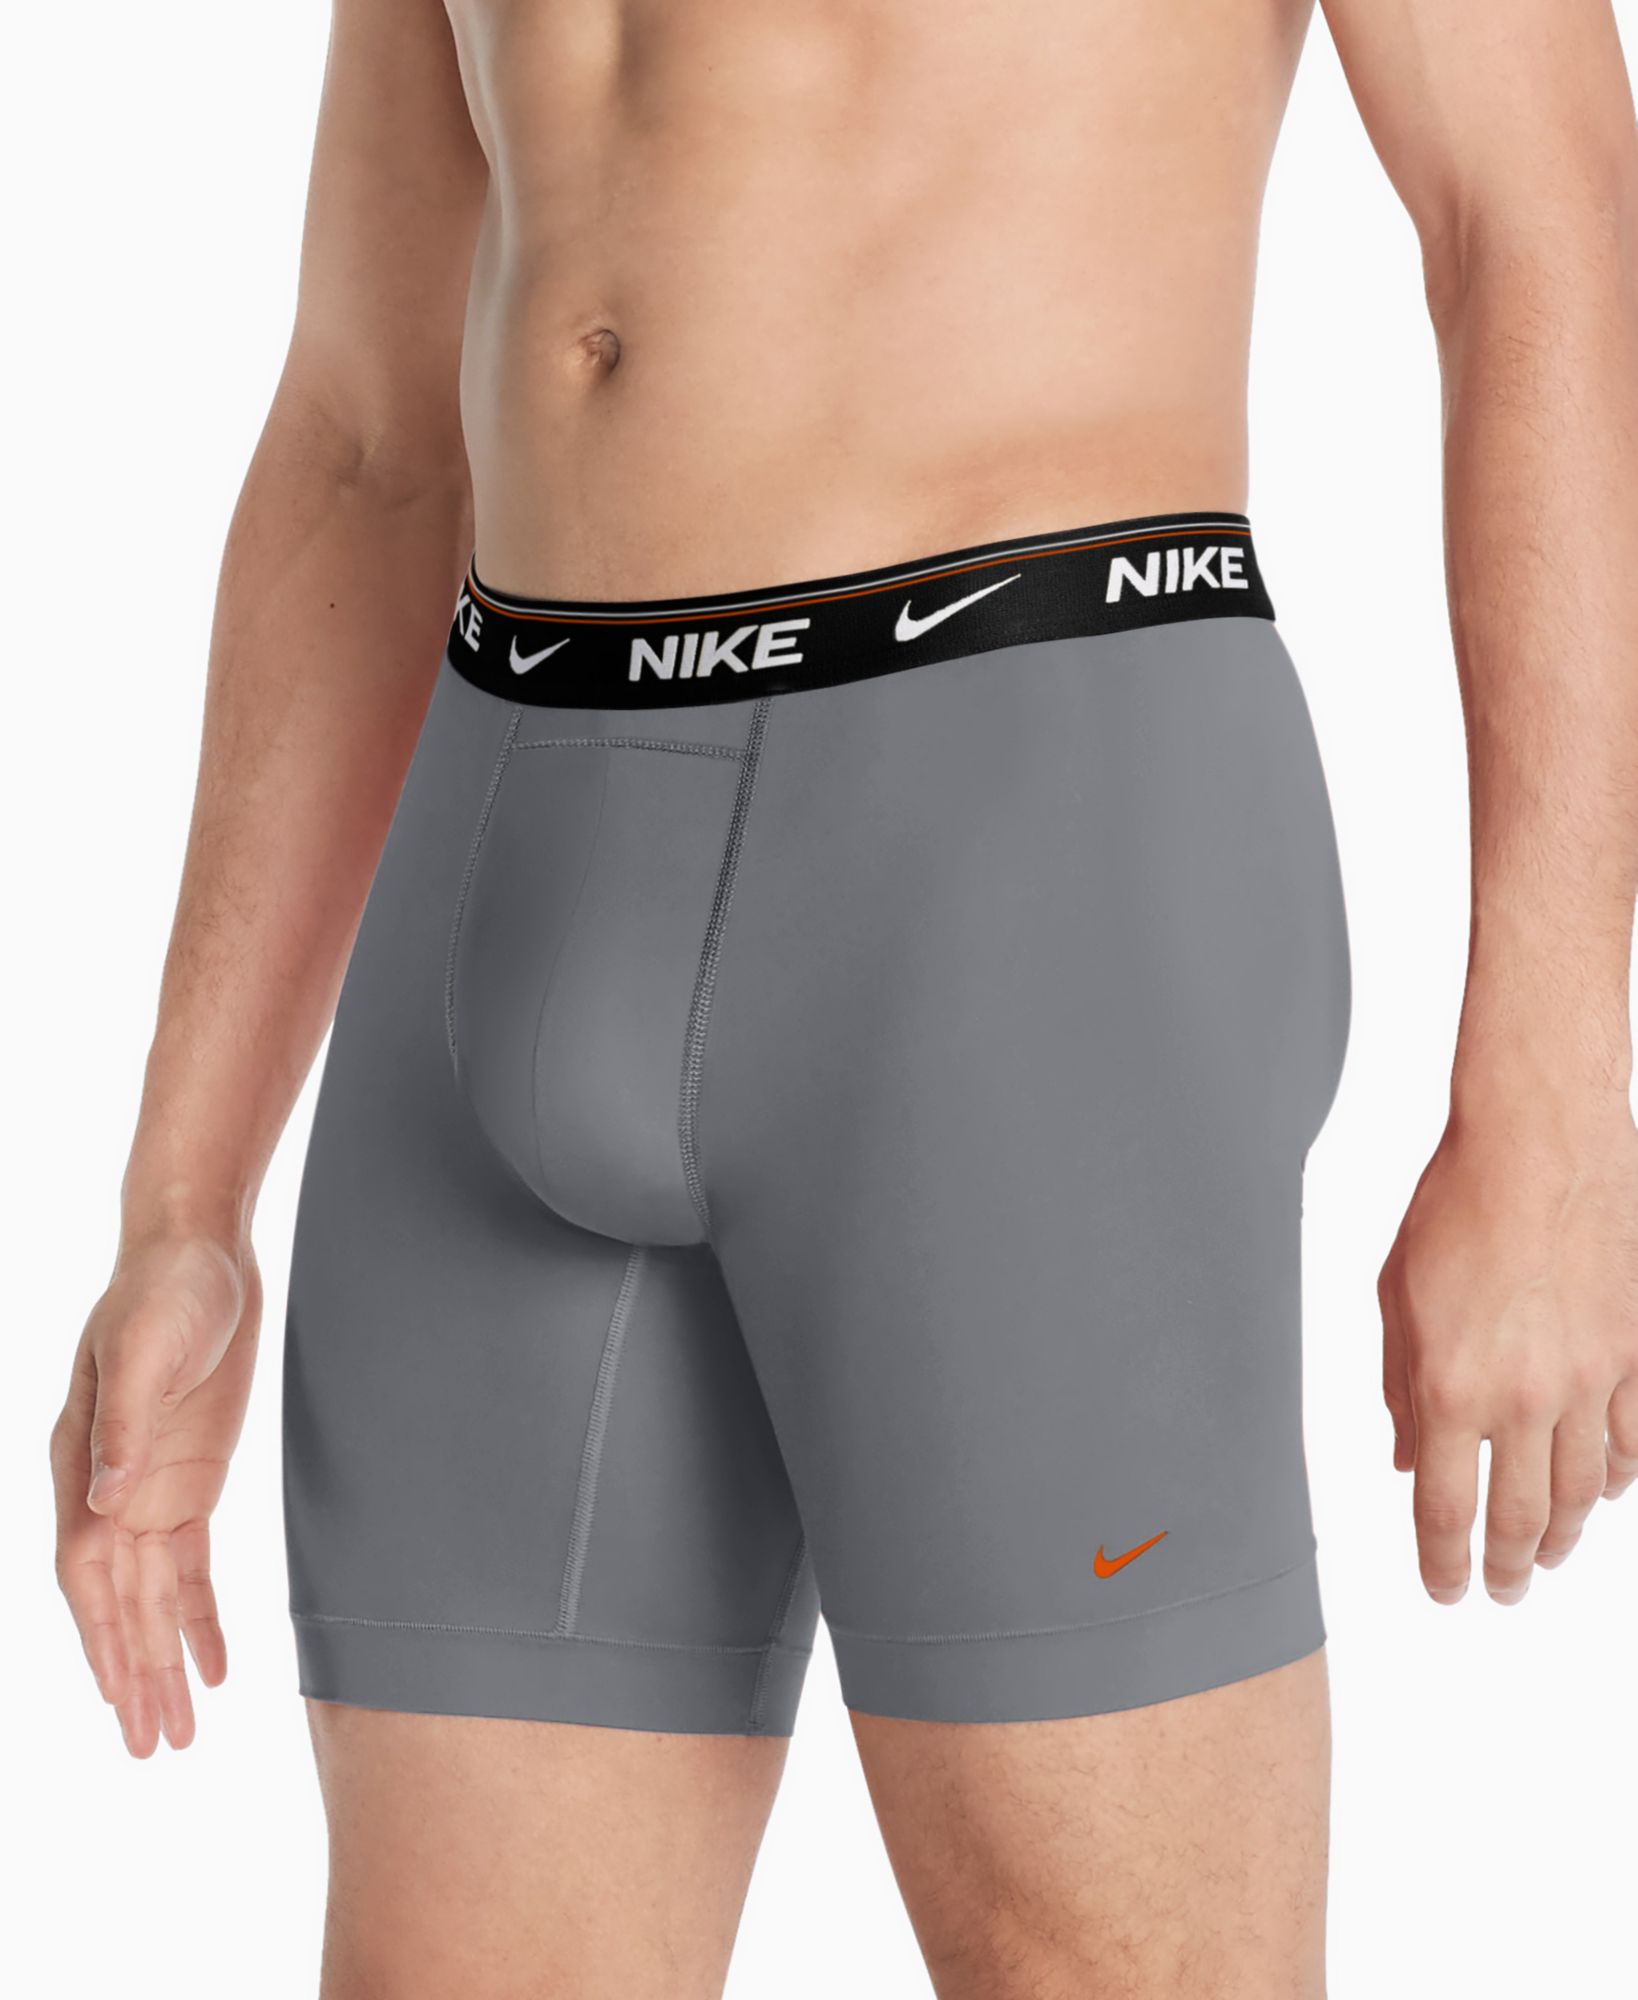 Nike Men's Dri-FIT Ultra Comfort Long Boxer Briefs – 3 Pack